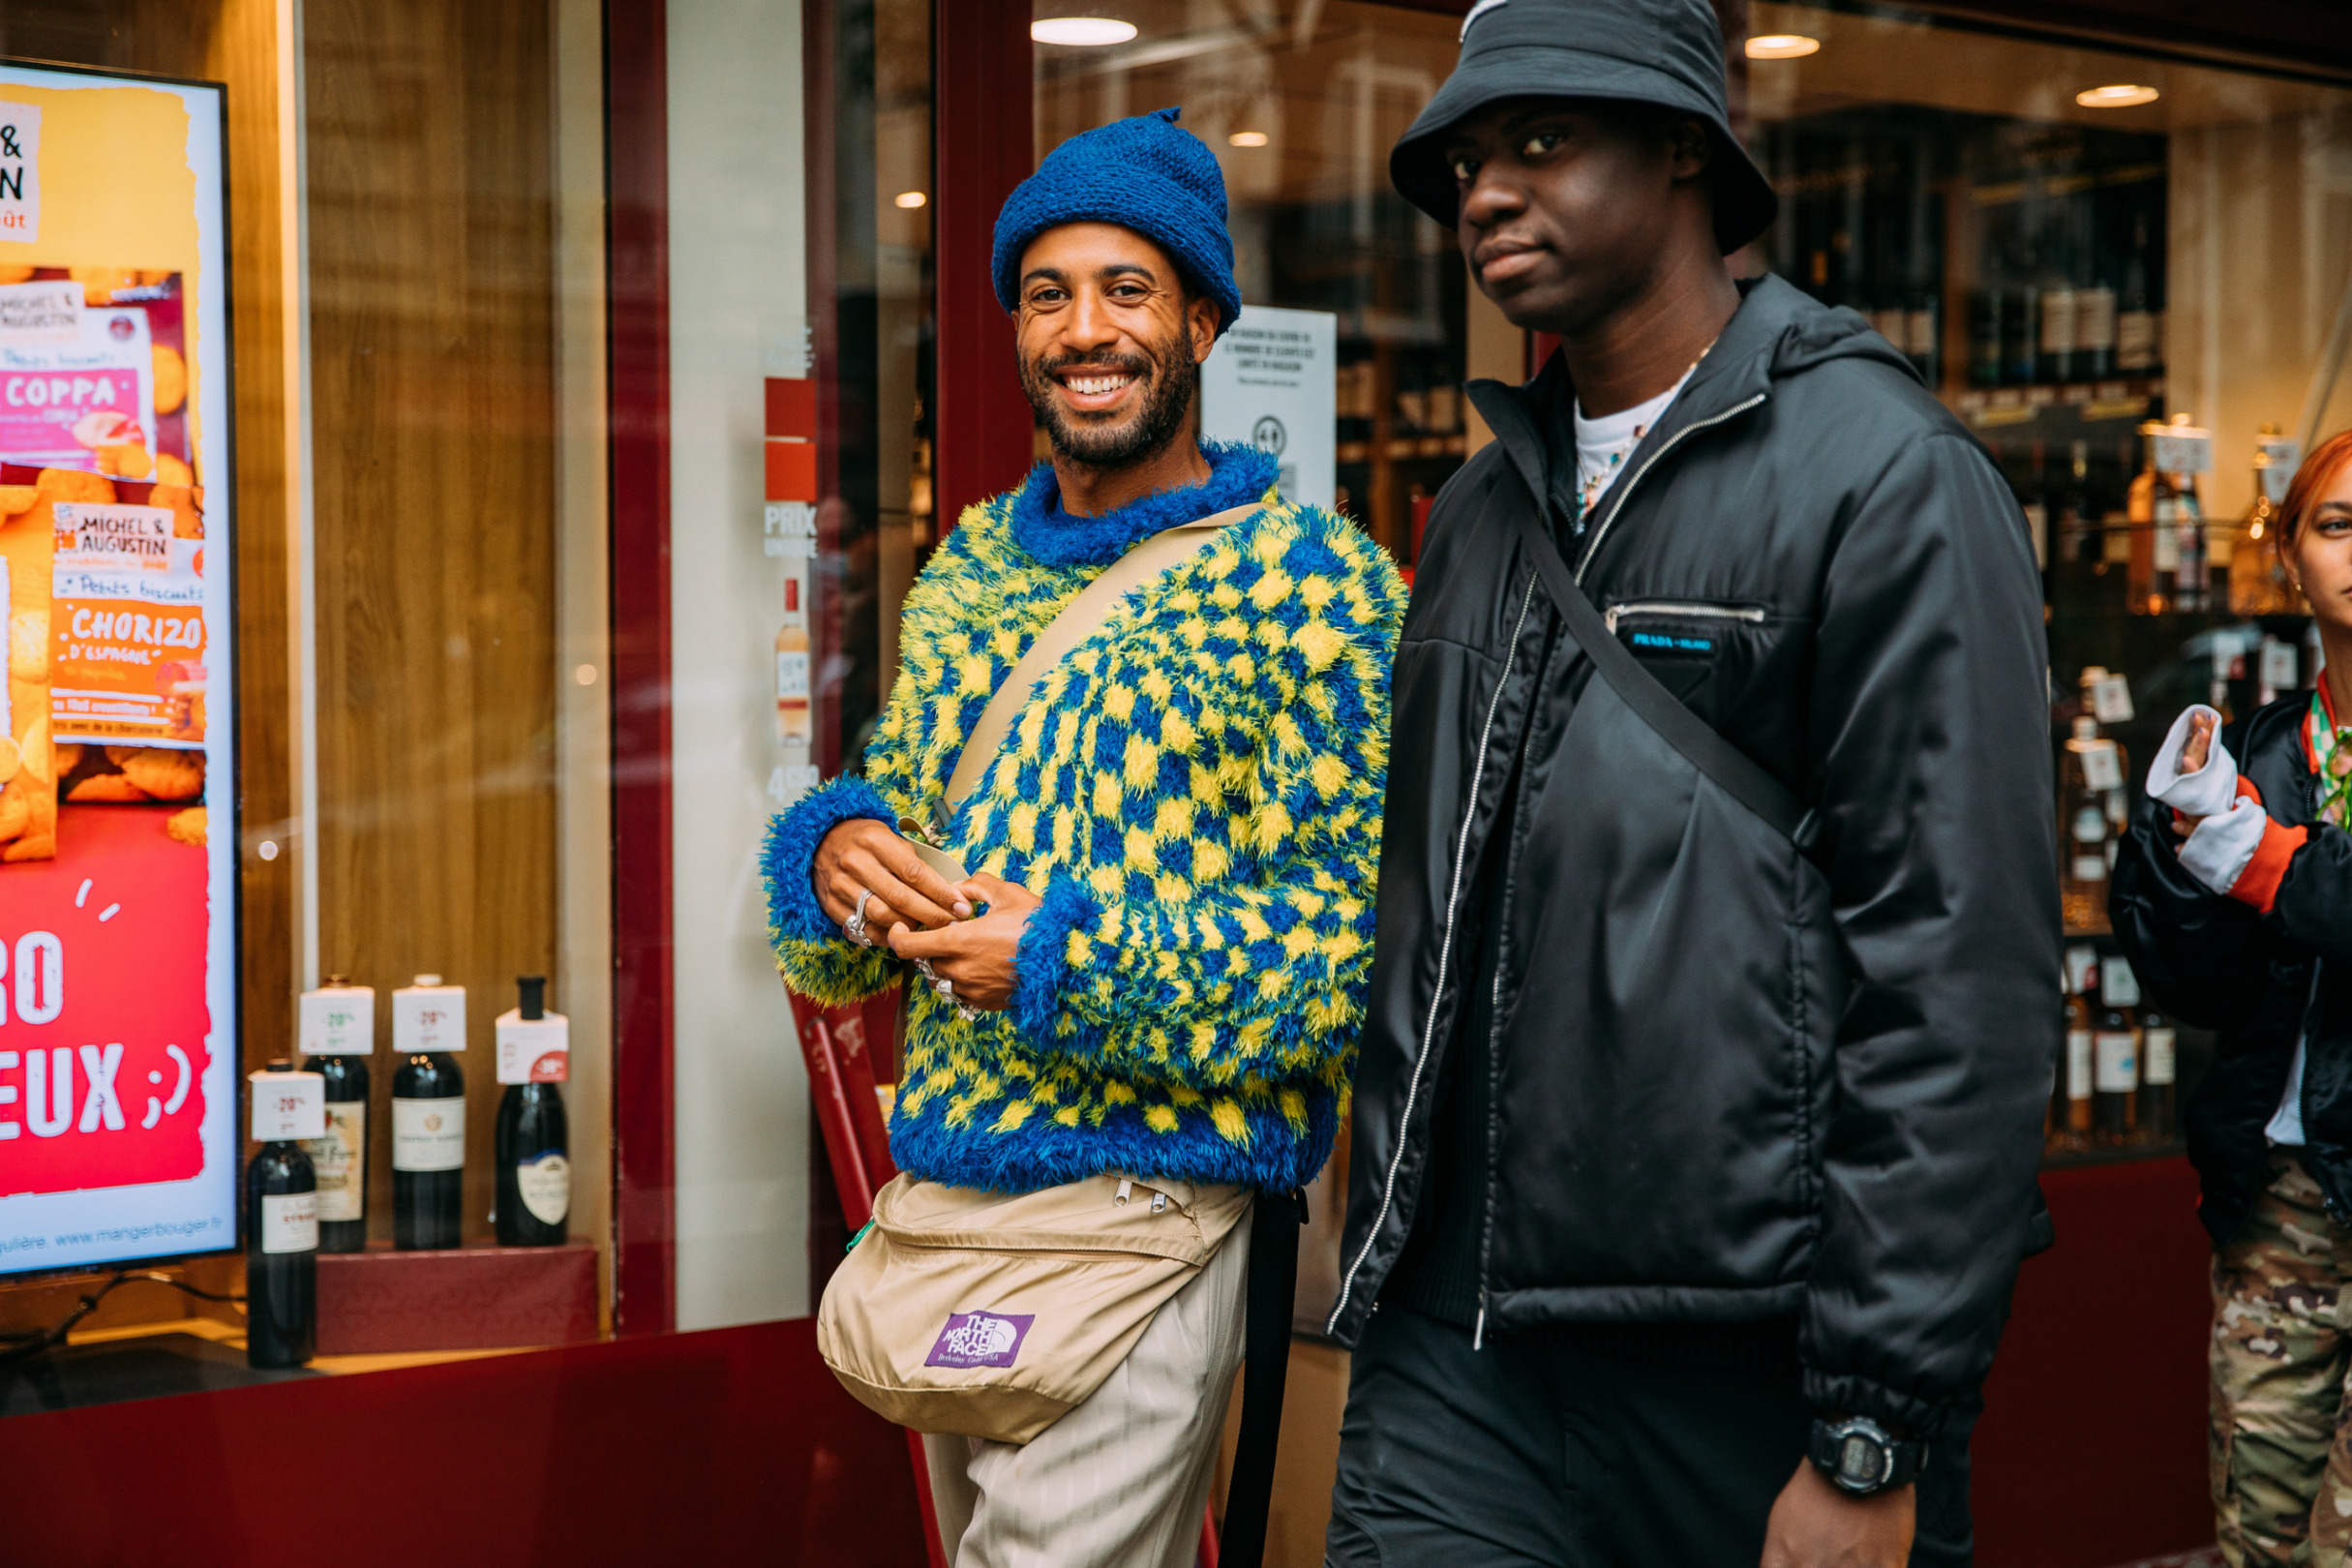 Sokak Stili: 2022 İlkbahar/Yaz Paris Erkek Moda Haftası